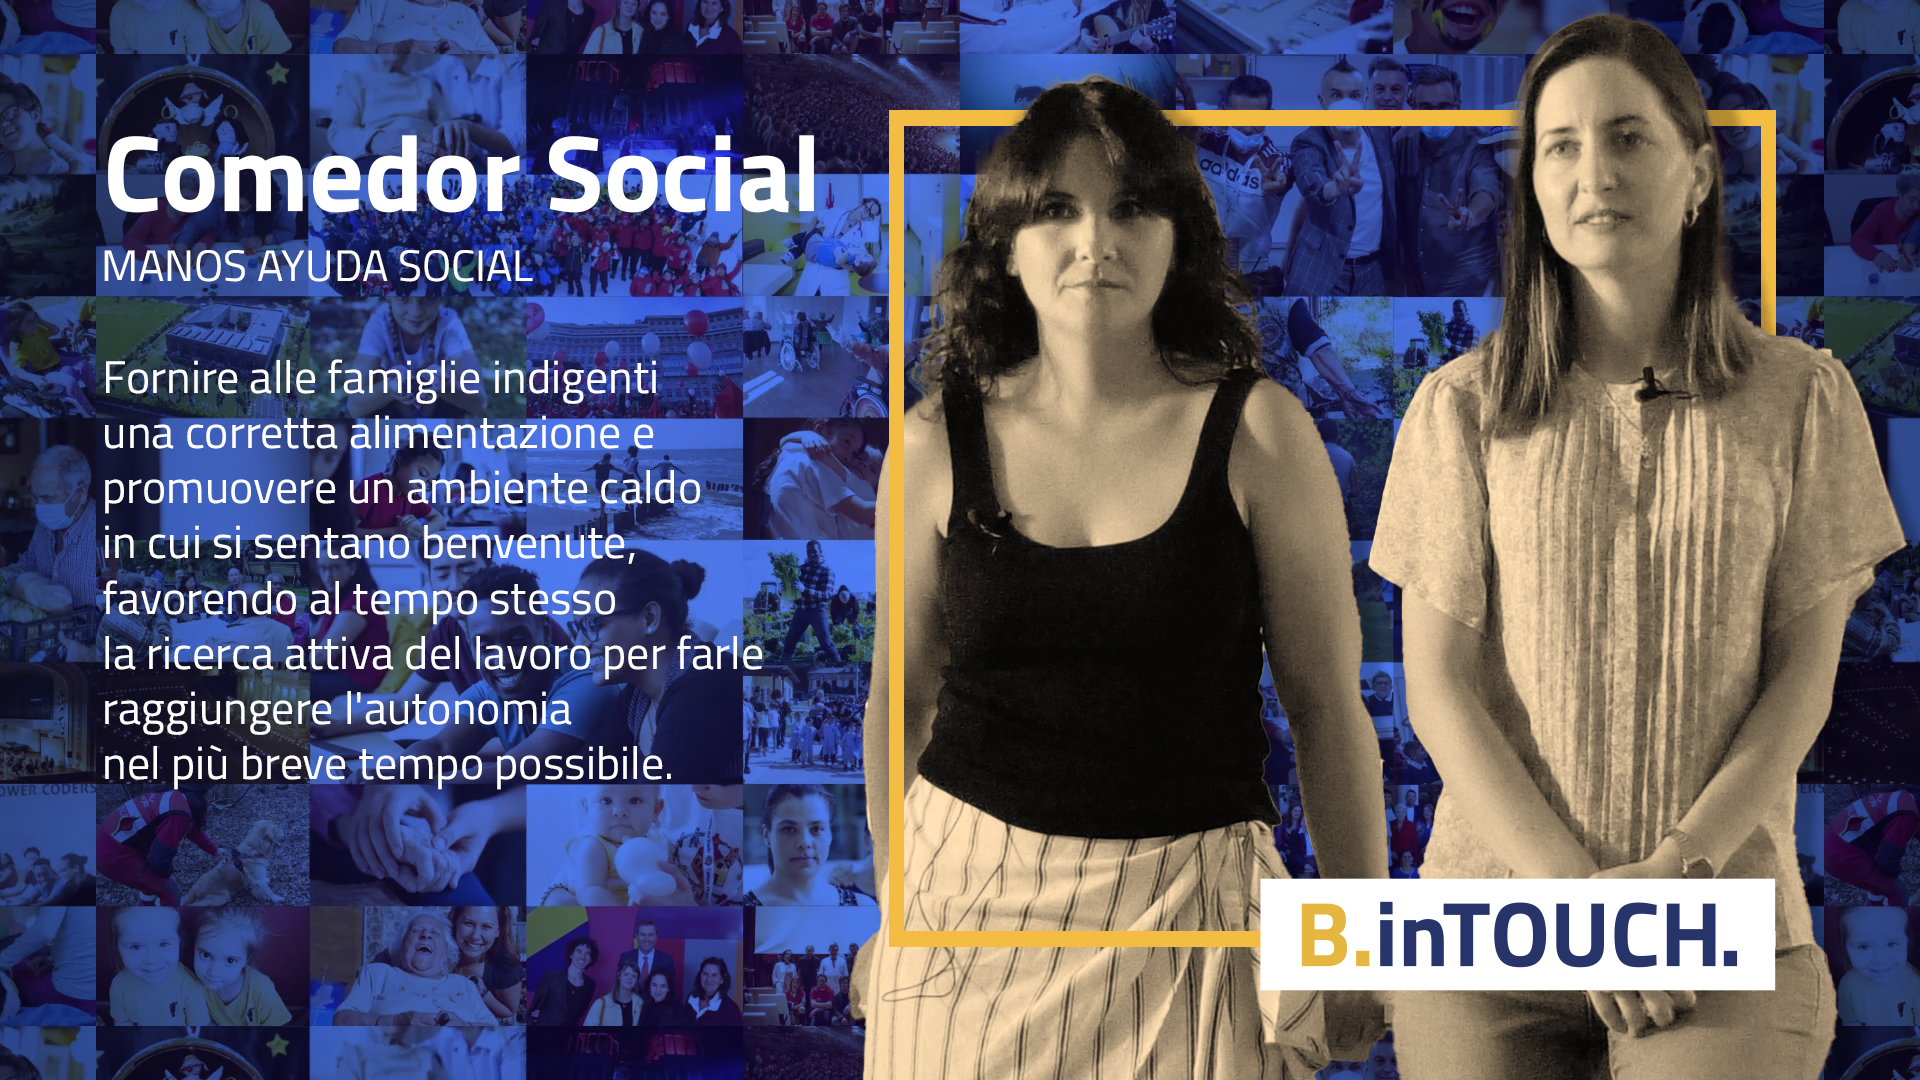 B.inTOUCH. #5 - Manos de Ayuda Social, impegnata dal 2011 ad aiutare i poveri di Madrid
